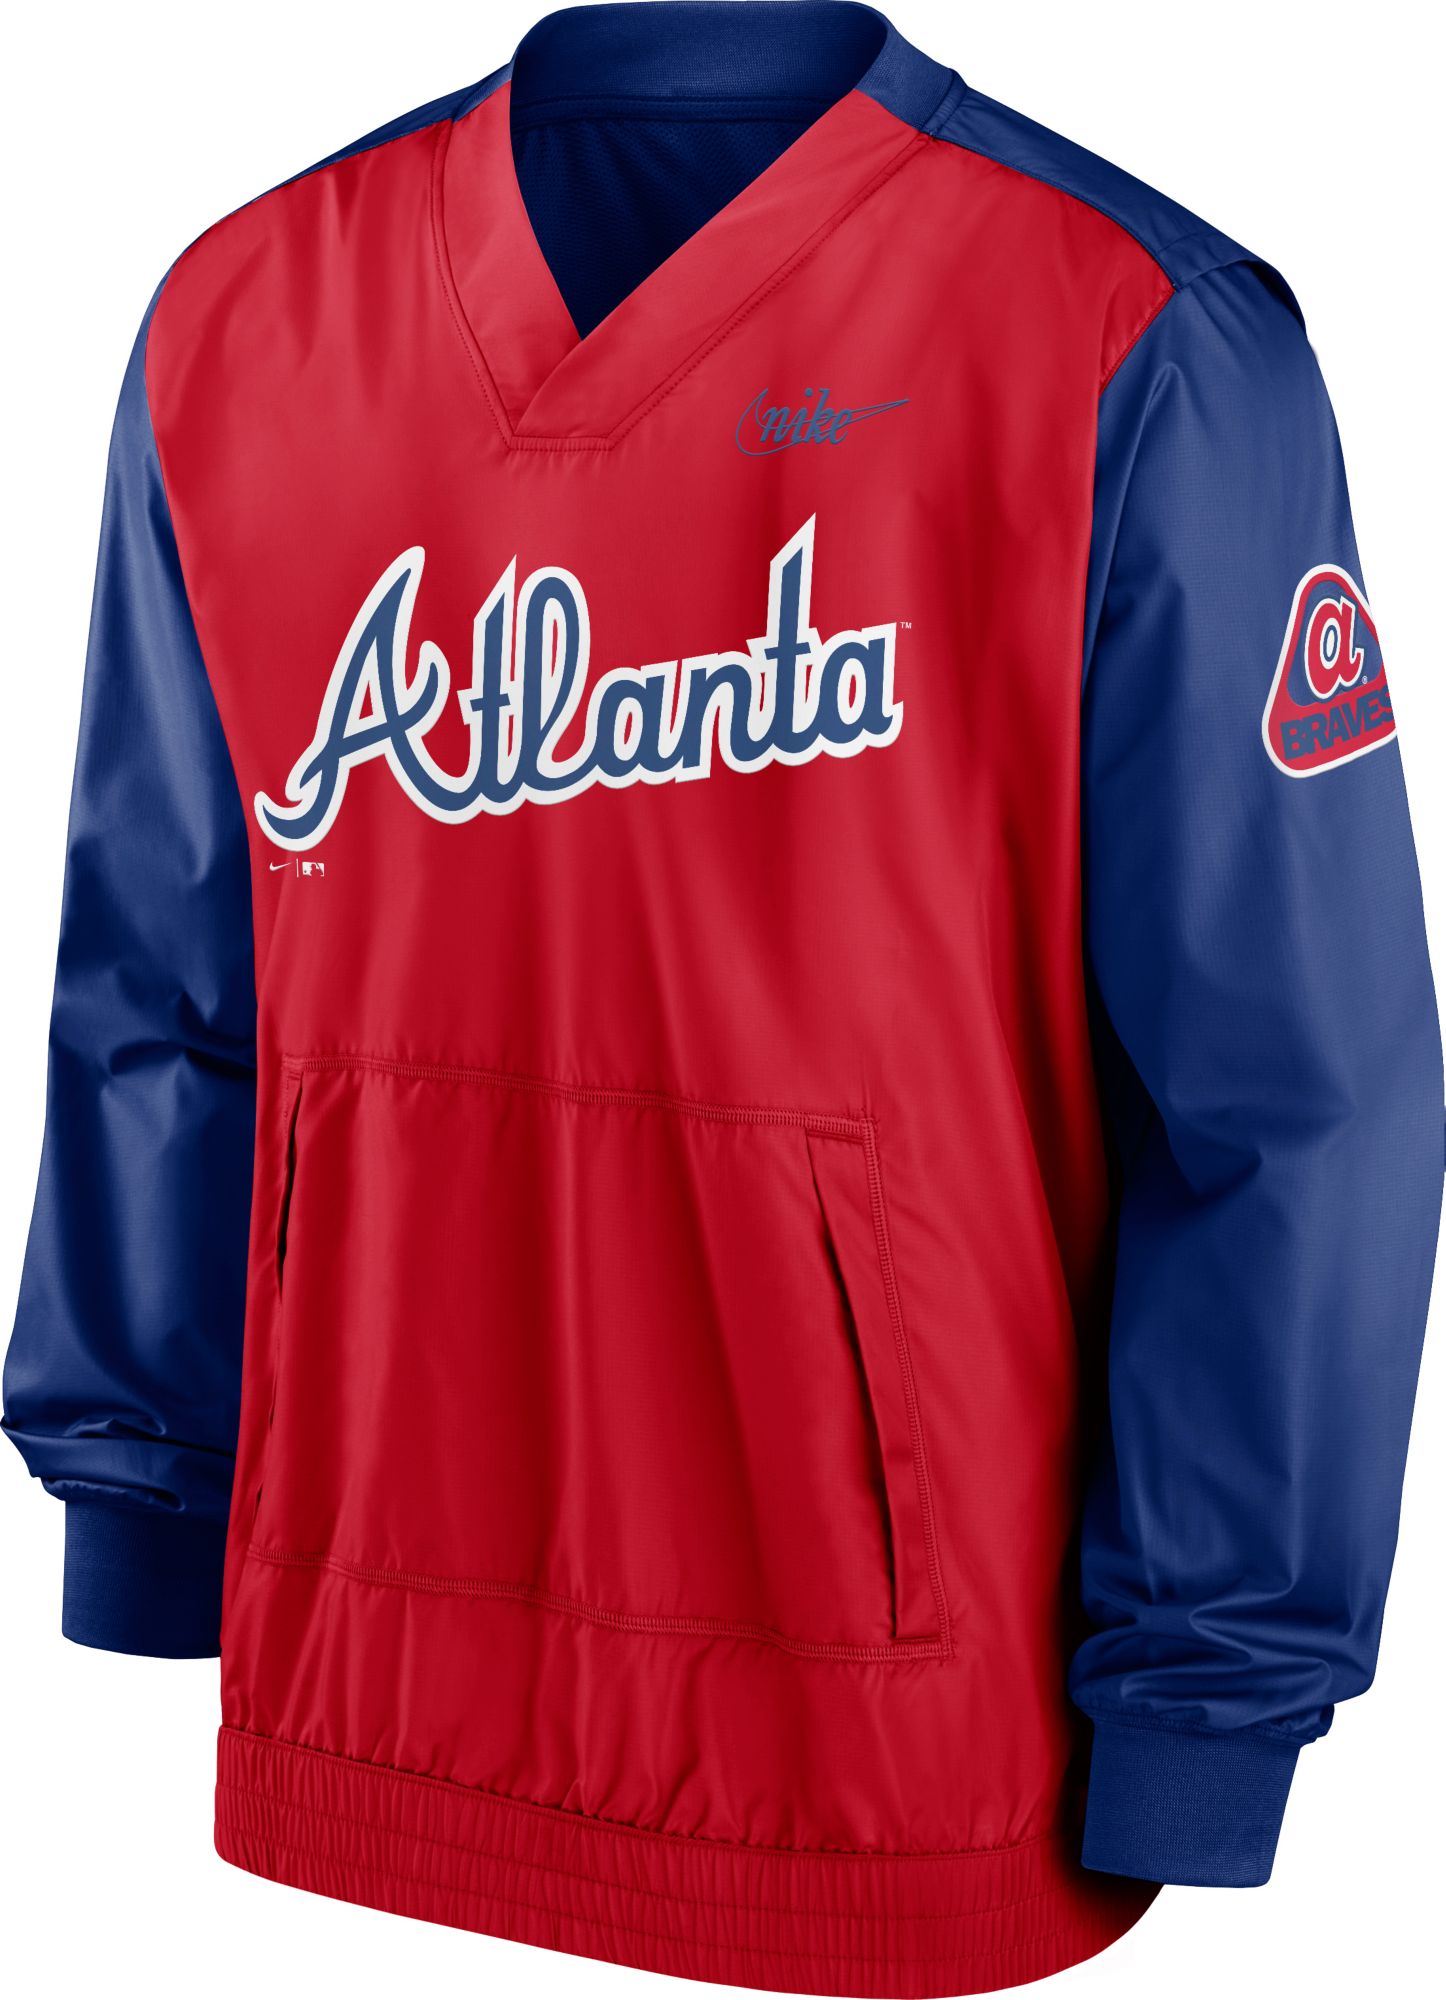 Mlb Atlanta Braves Boys' Pullover Team Jersey : Target